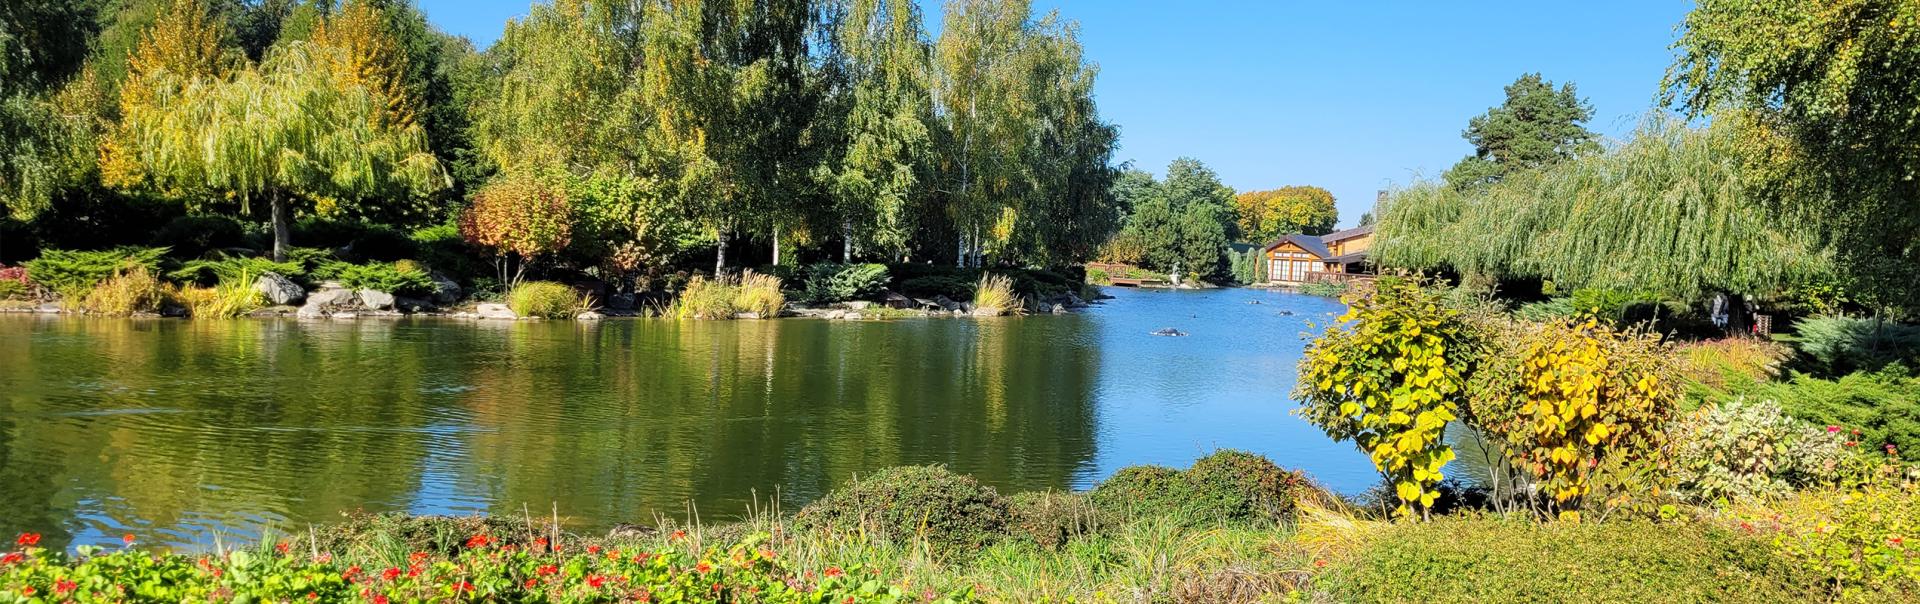  Национальный парк Межигорье - один из лучших парков в Украине